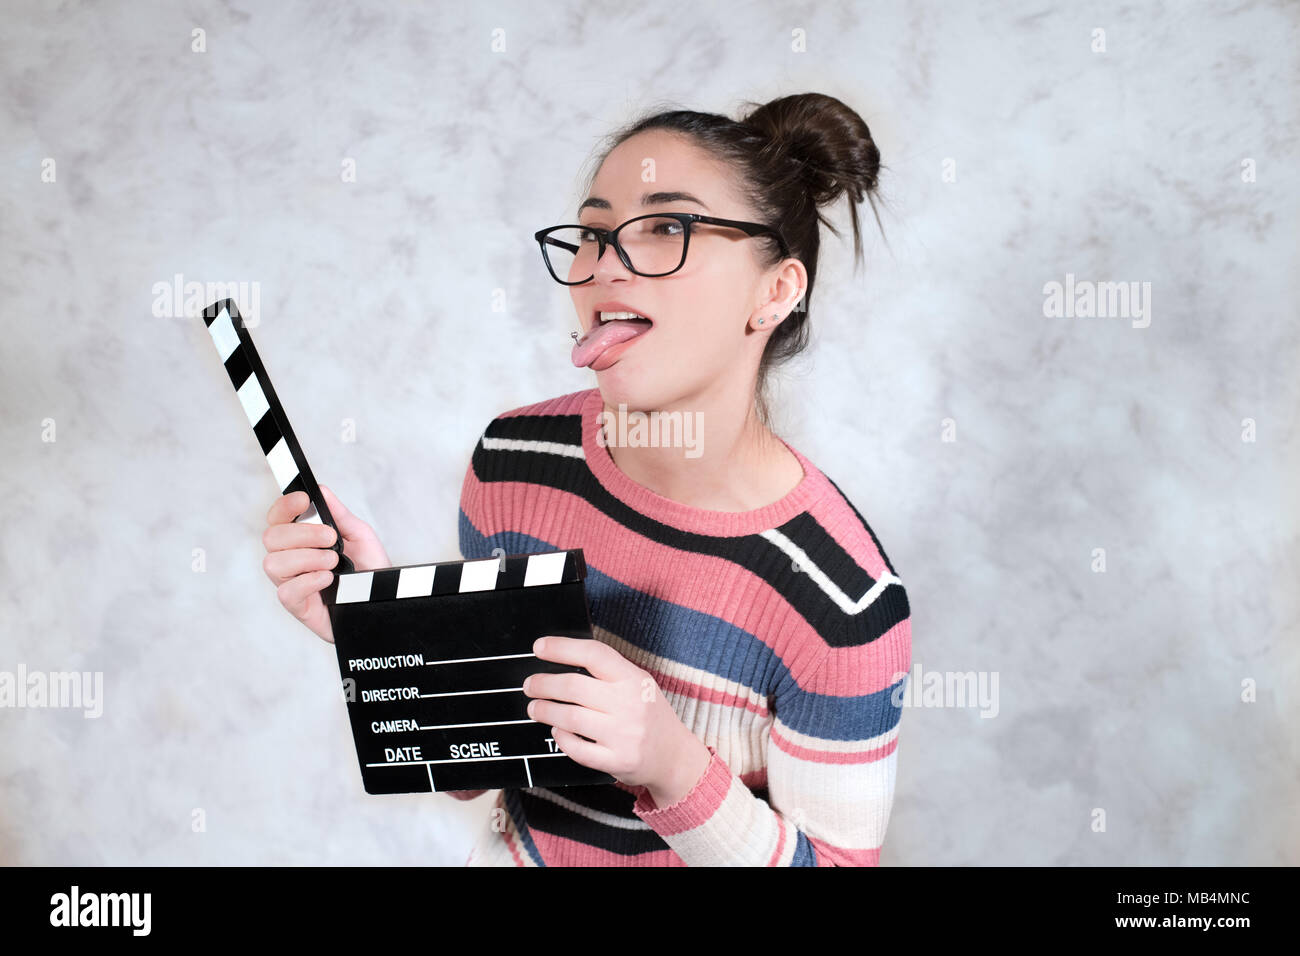 Jeune femme drôle comédie actrice grimace face expression bouche ouverte avec movie clapper board Banque D'Images